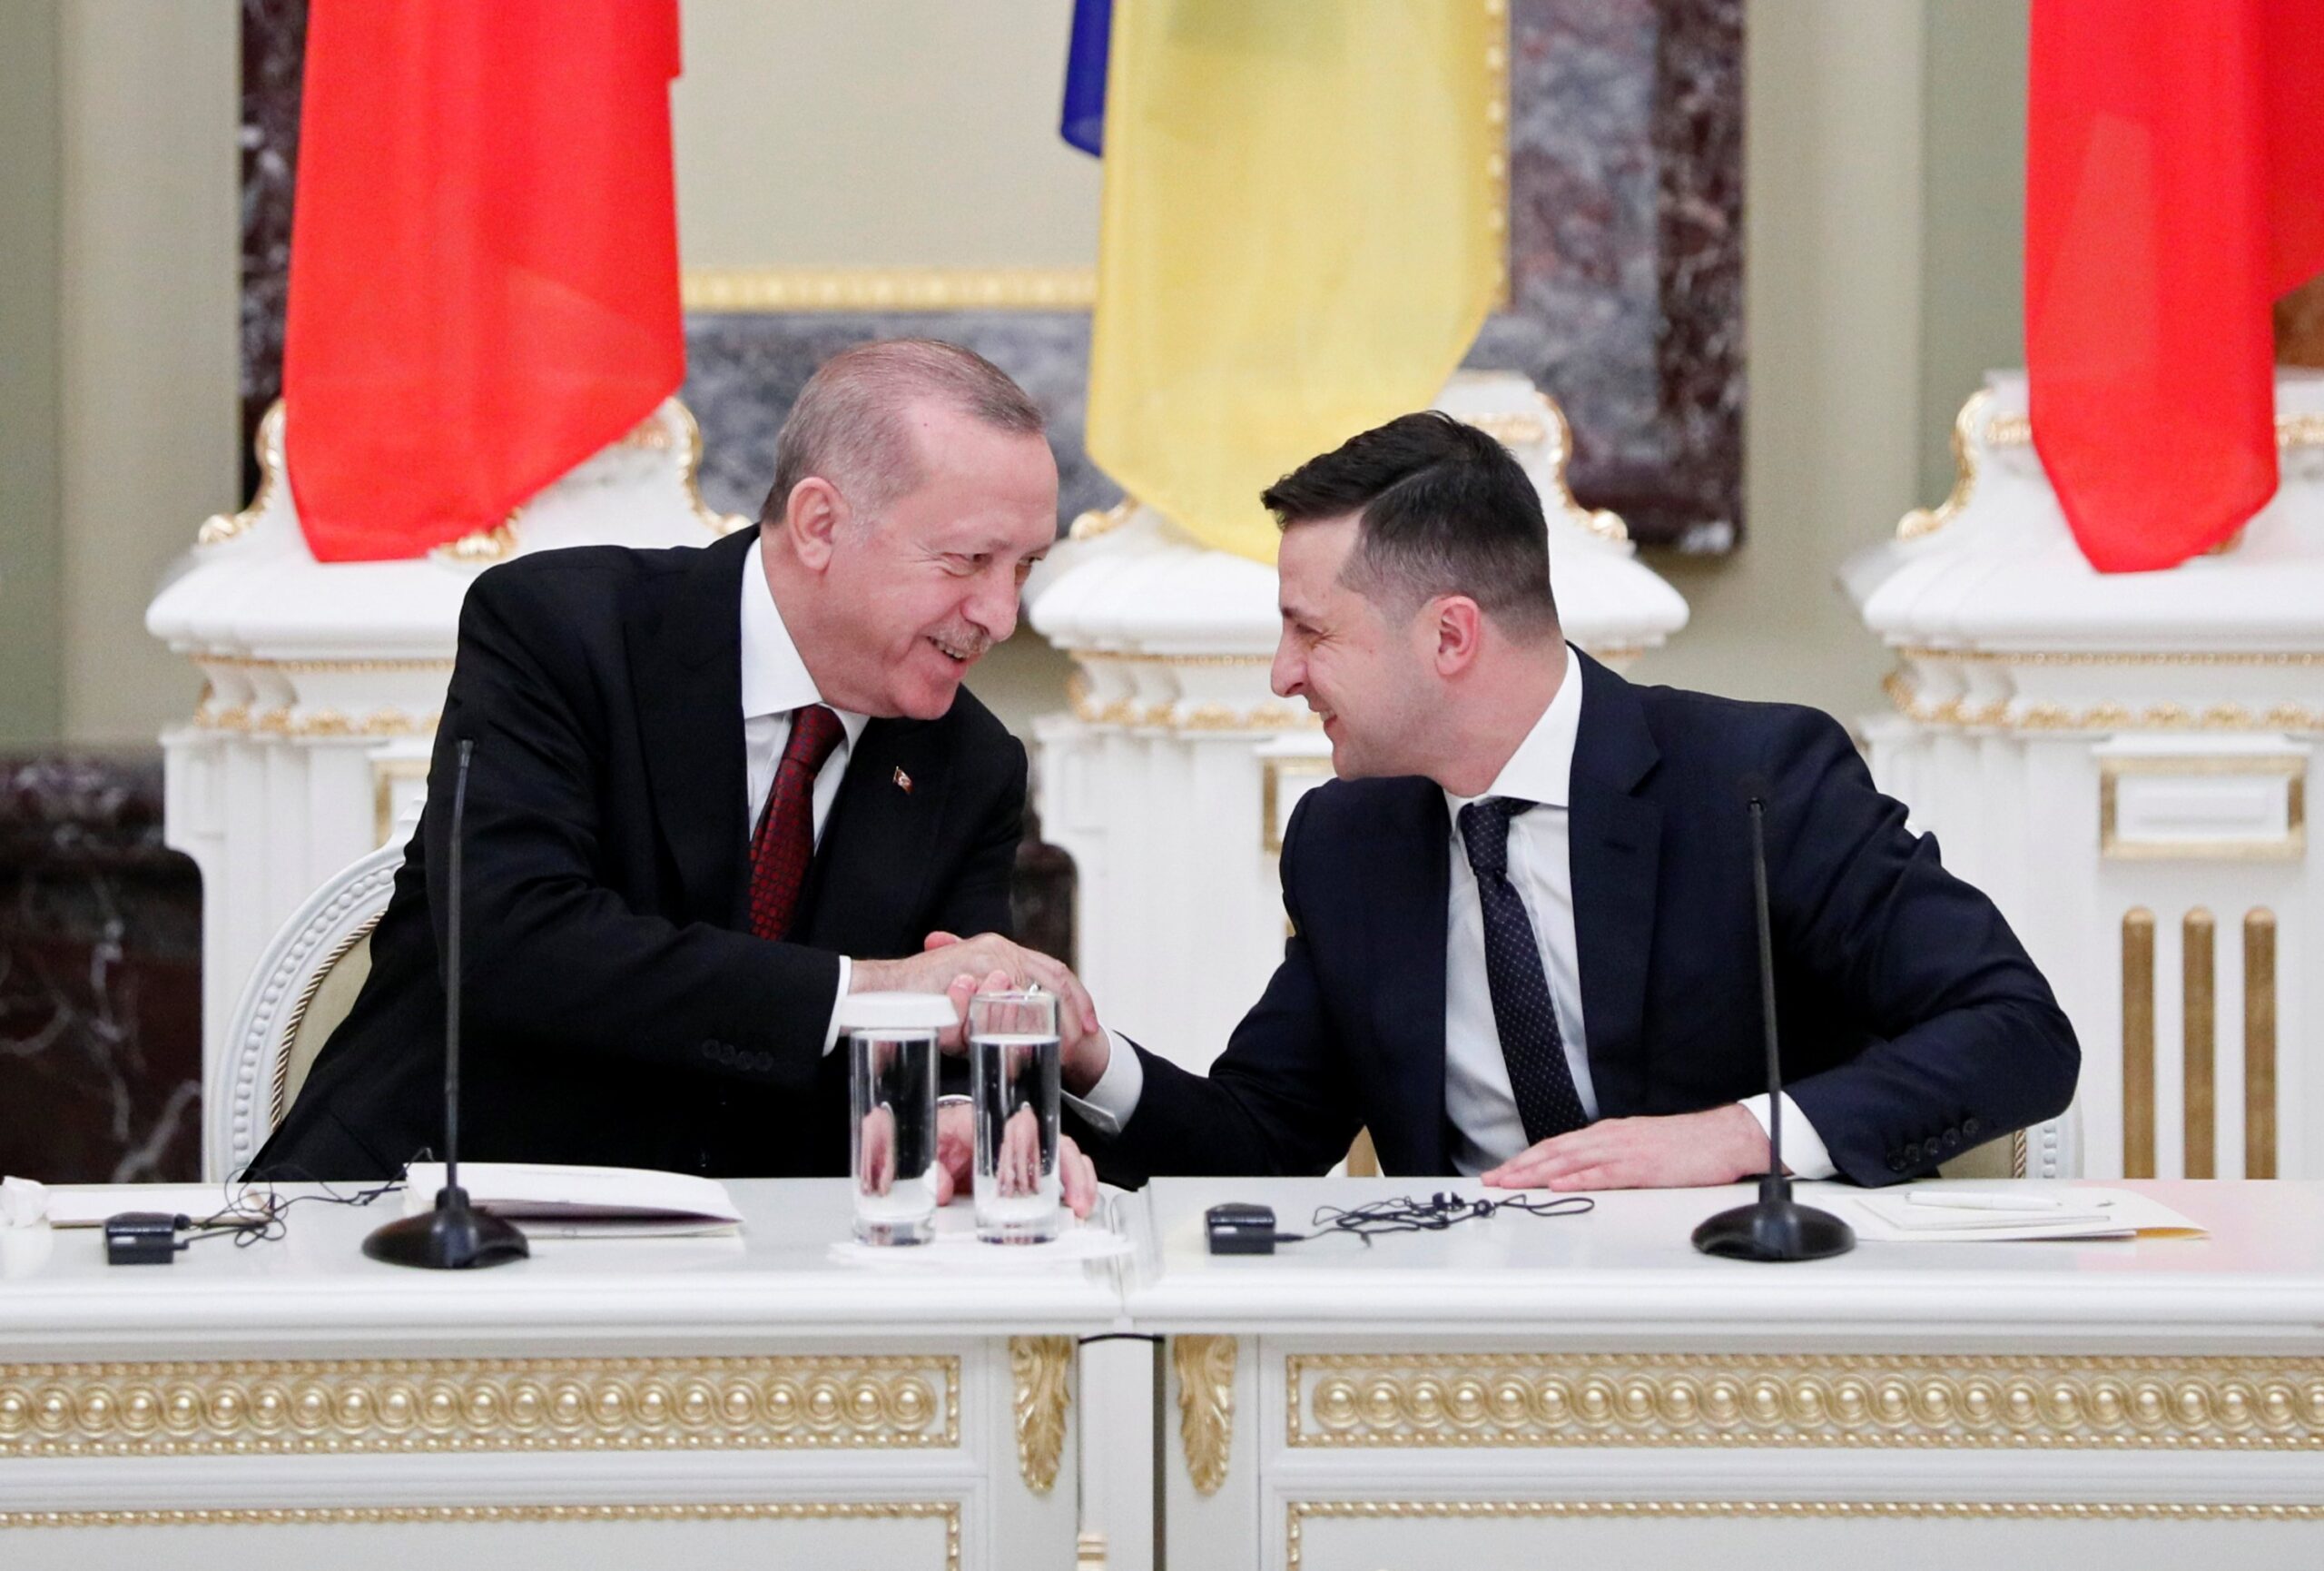 turquia-ucrania-assinar-acordo-livre-comercio-erdogan-kiev-volodymyr-zelenskyy